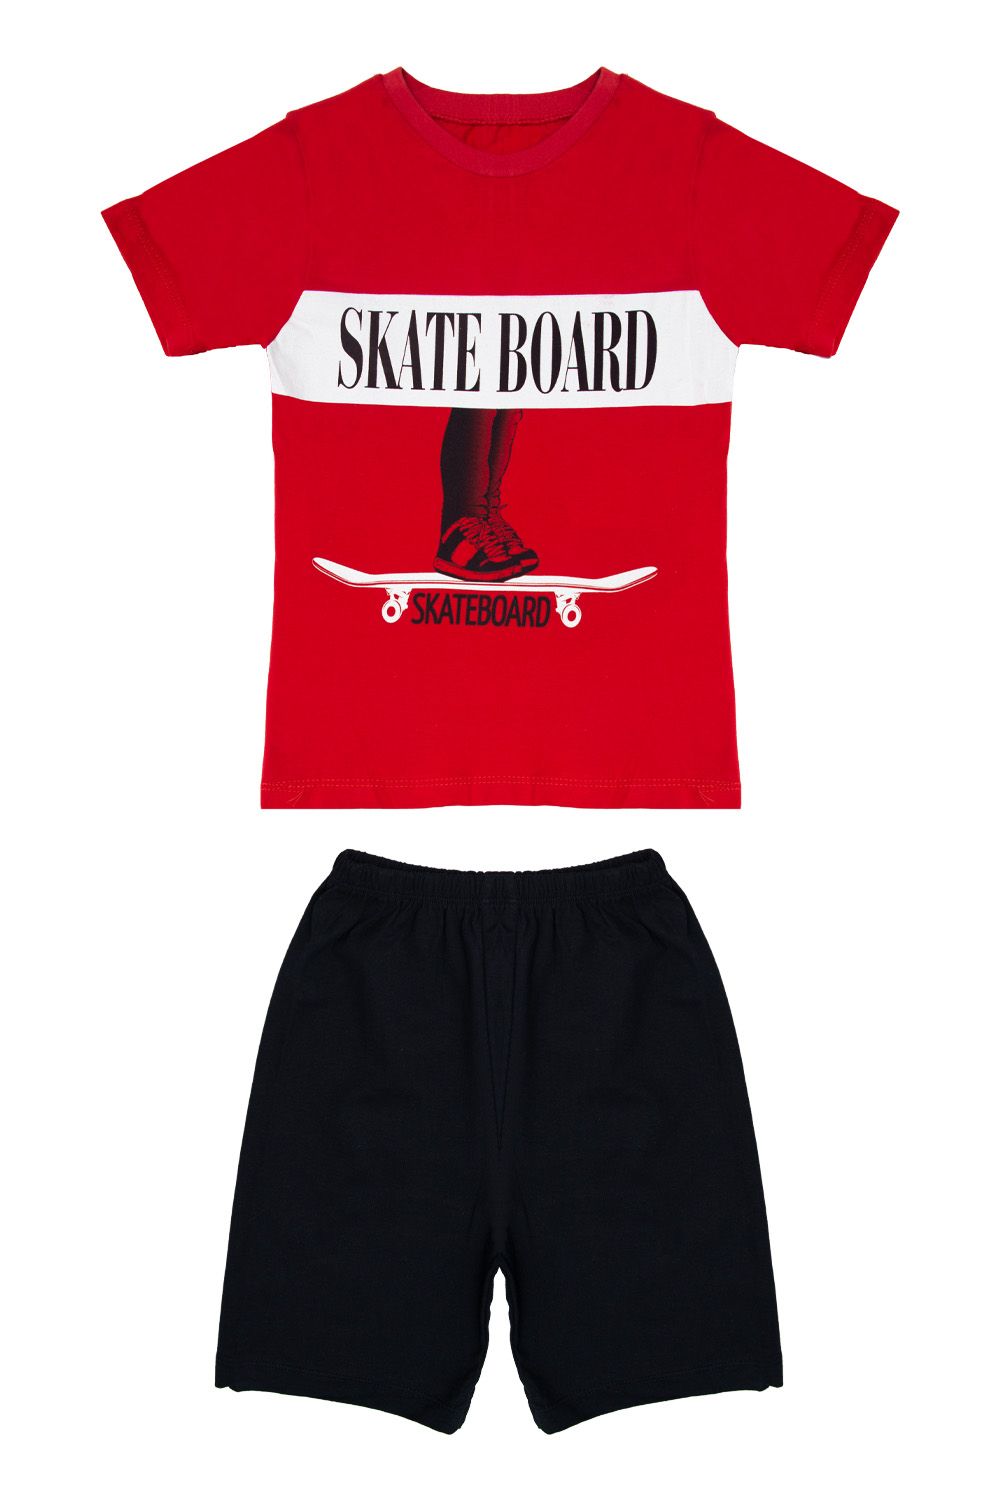 Σετ Ρούχων Kid Skate Board